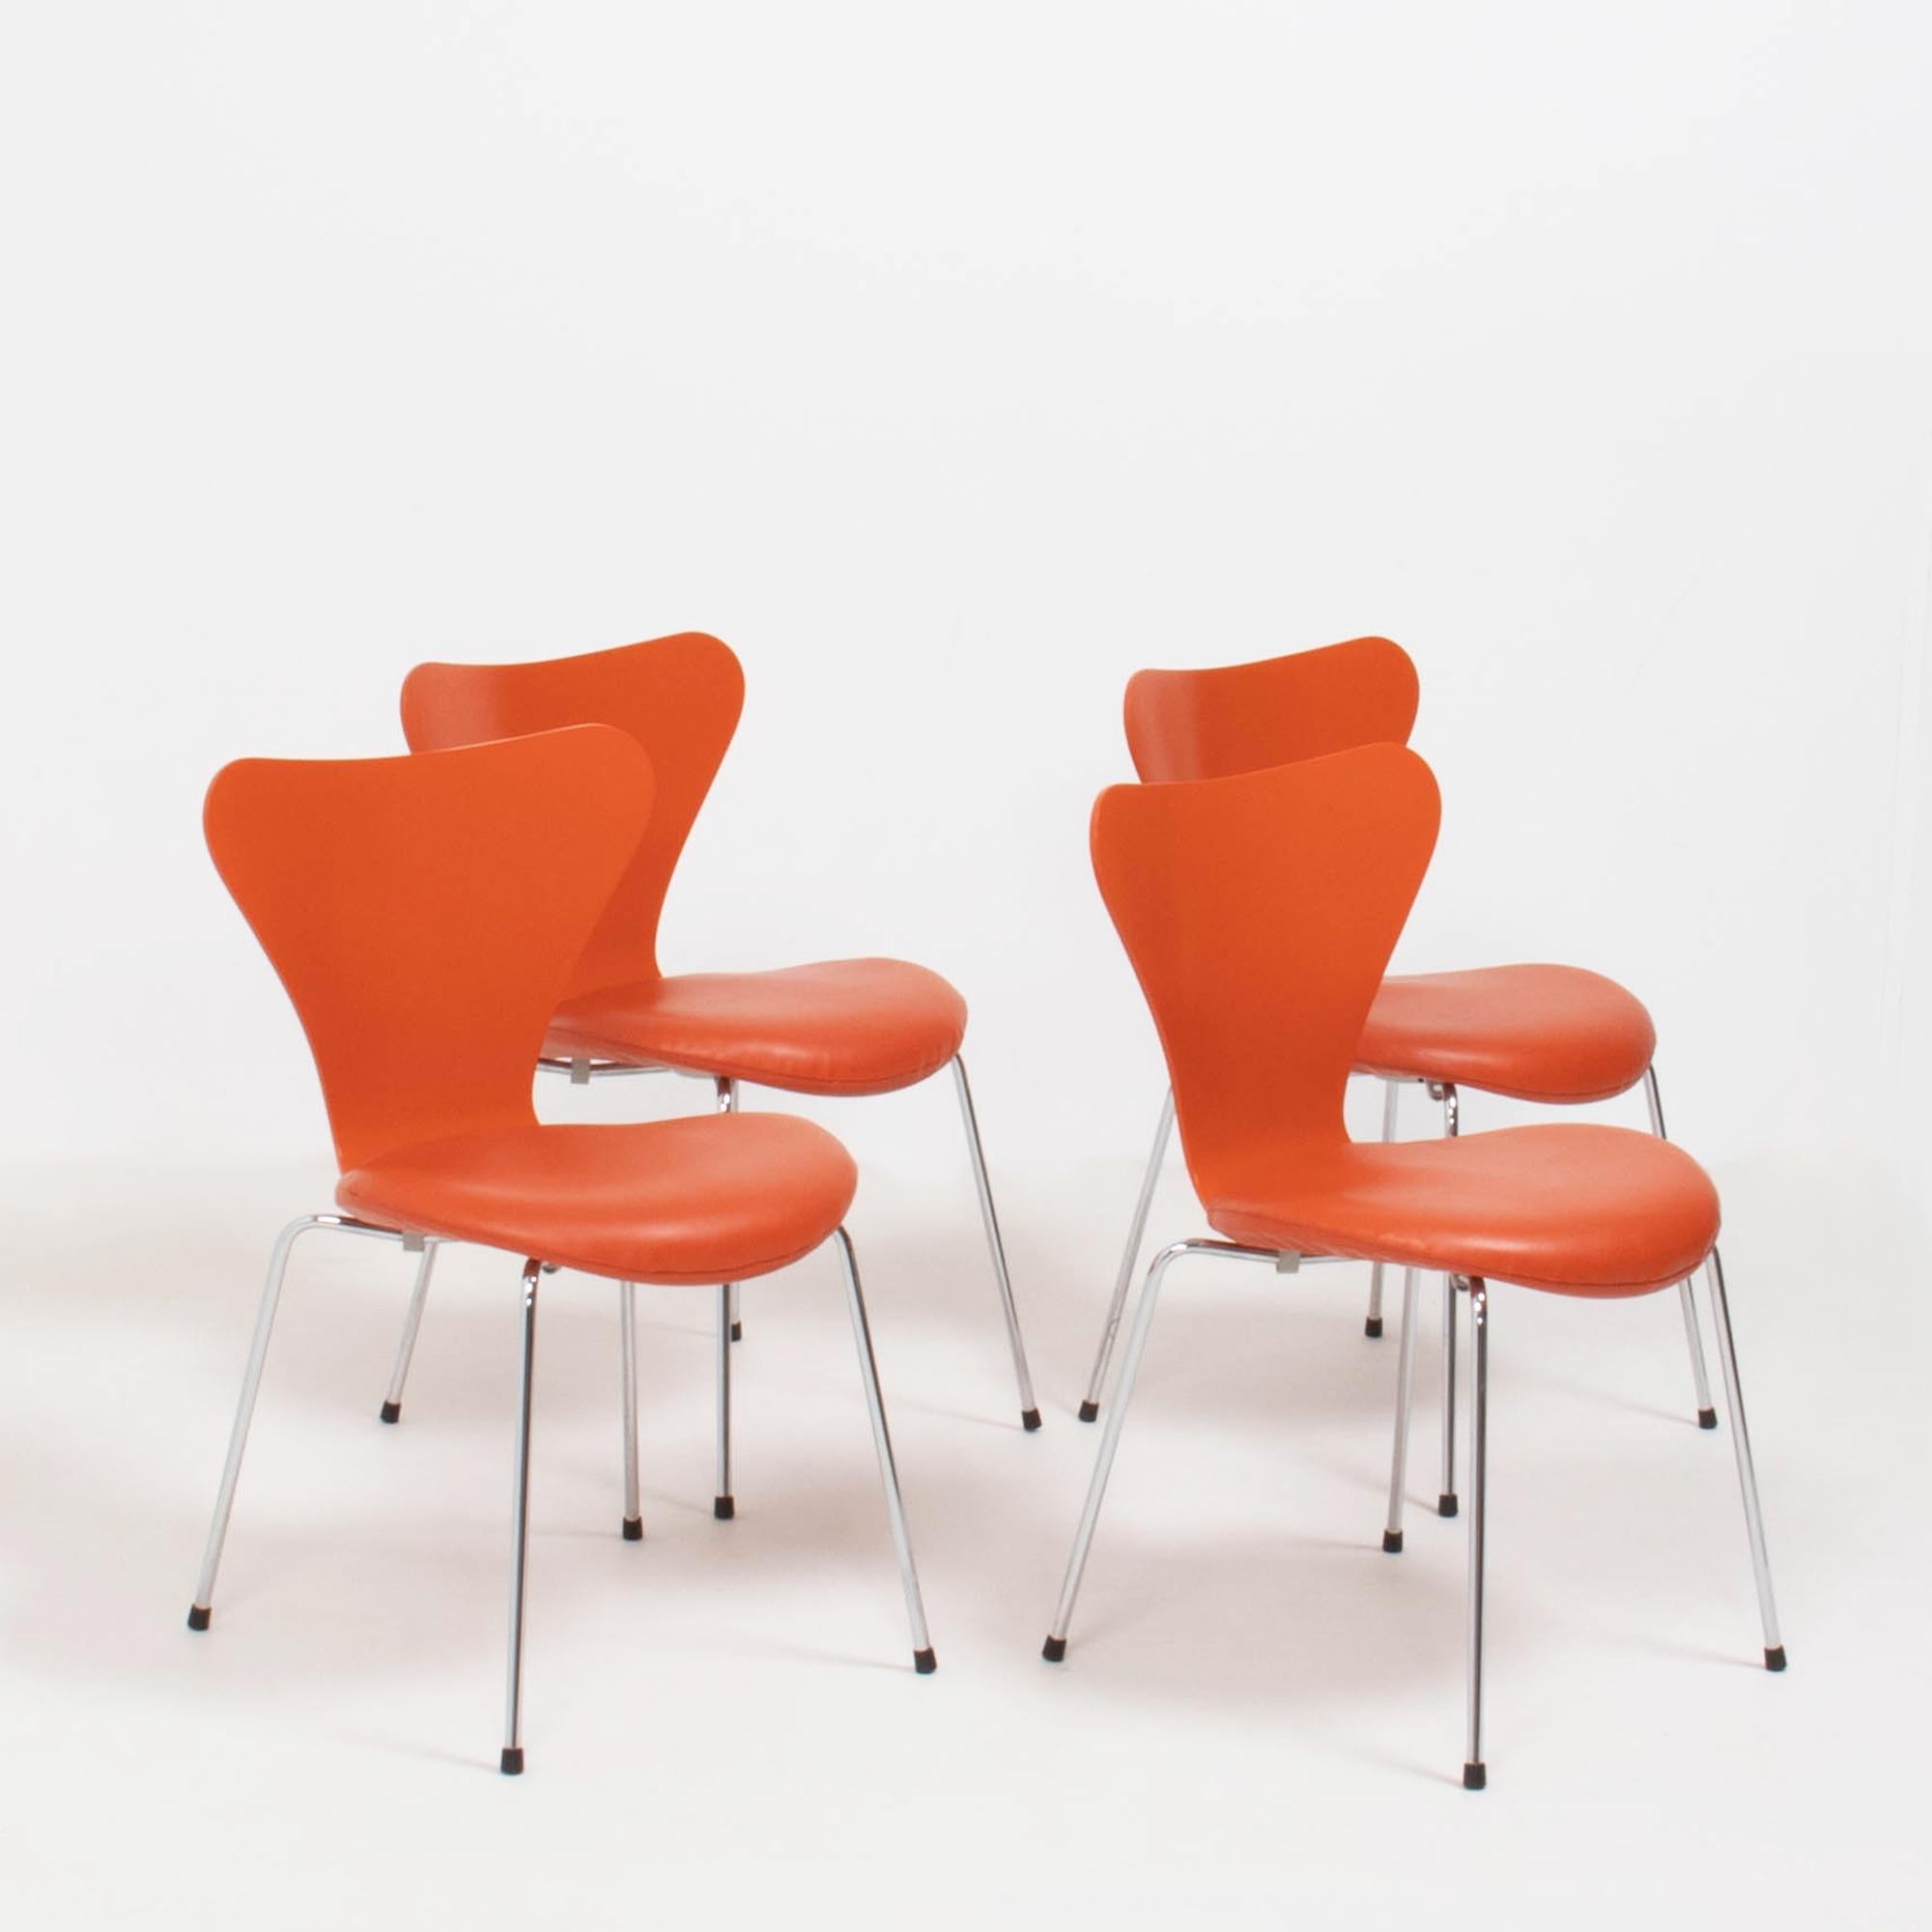 Conçue à l'origine par Arne Jacobsen en 1955, la chaise Series 7 Dining est fabriquée depuis par Fritz Hansen. Véritable icône du design, la série 7 est devenue l'une des chaises les plus vendues de l'histoire.

Construites en placage moulé sous